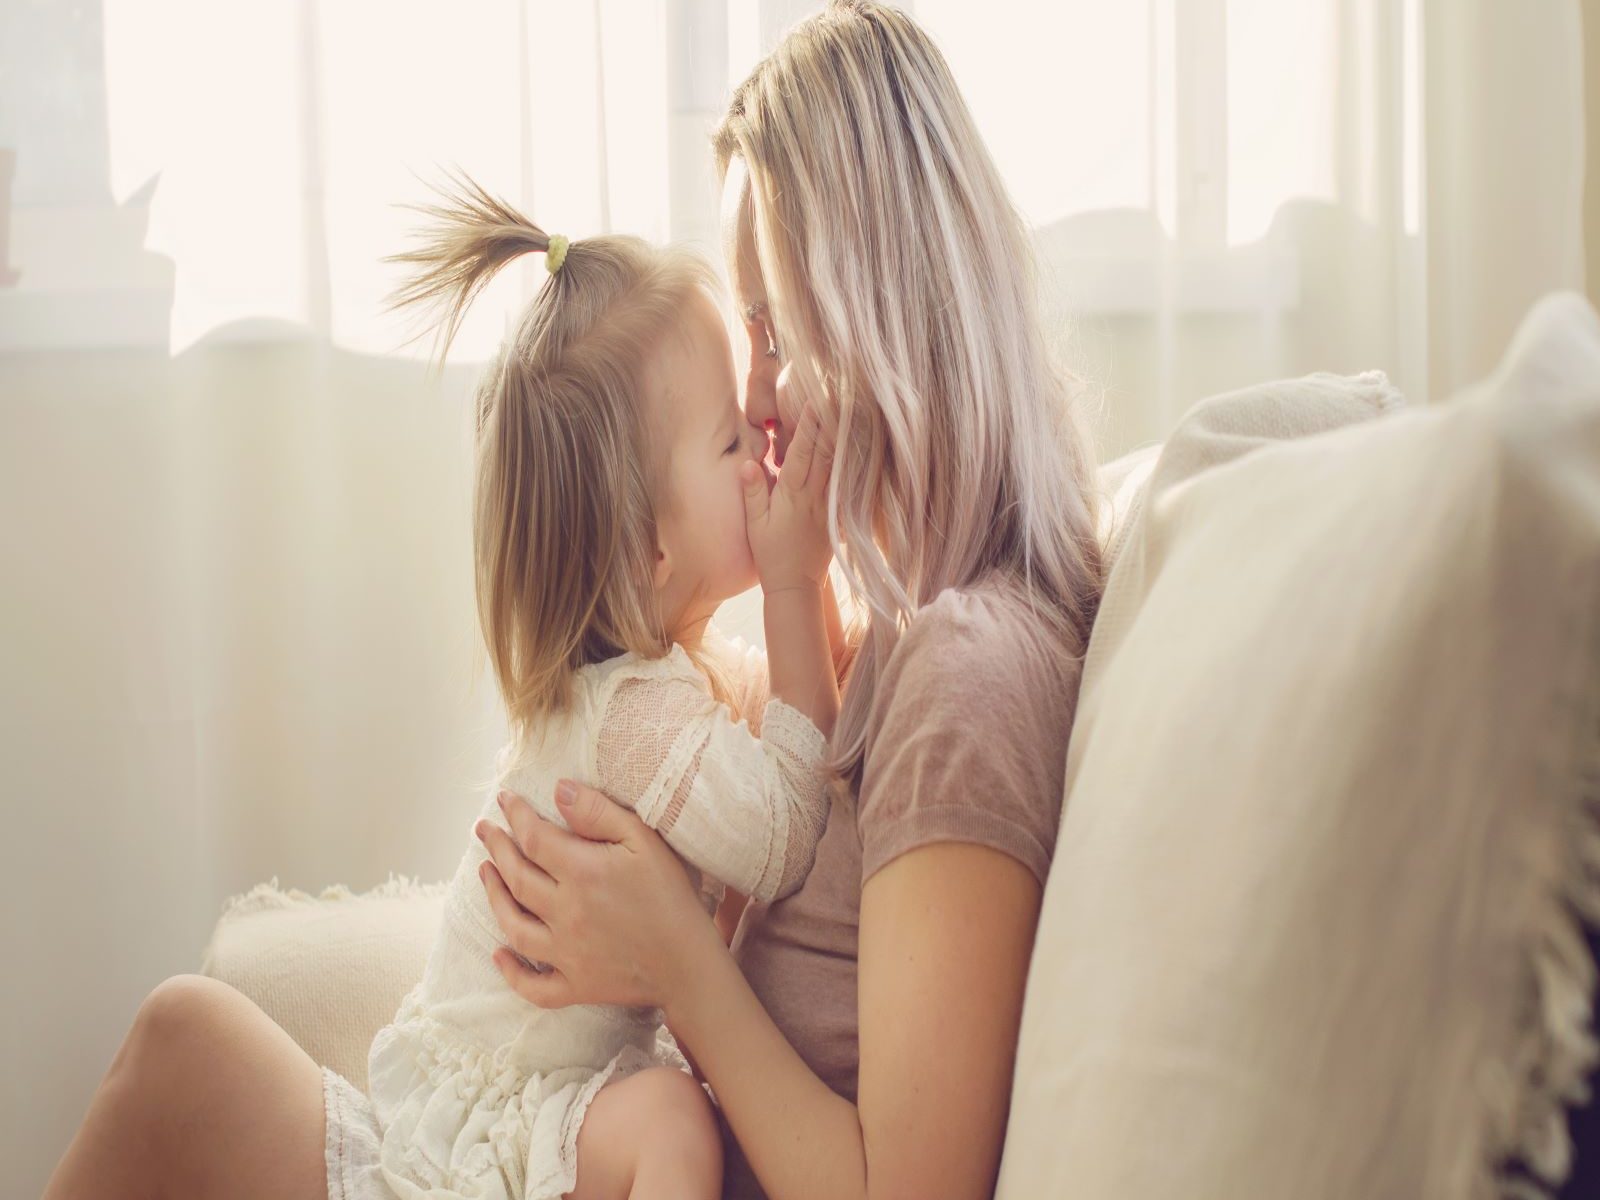 एक रोमांटिक जीवन की इच्छा आपके मातृत्व को कम नहीं करेगा. (Image-Shutterstock)